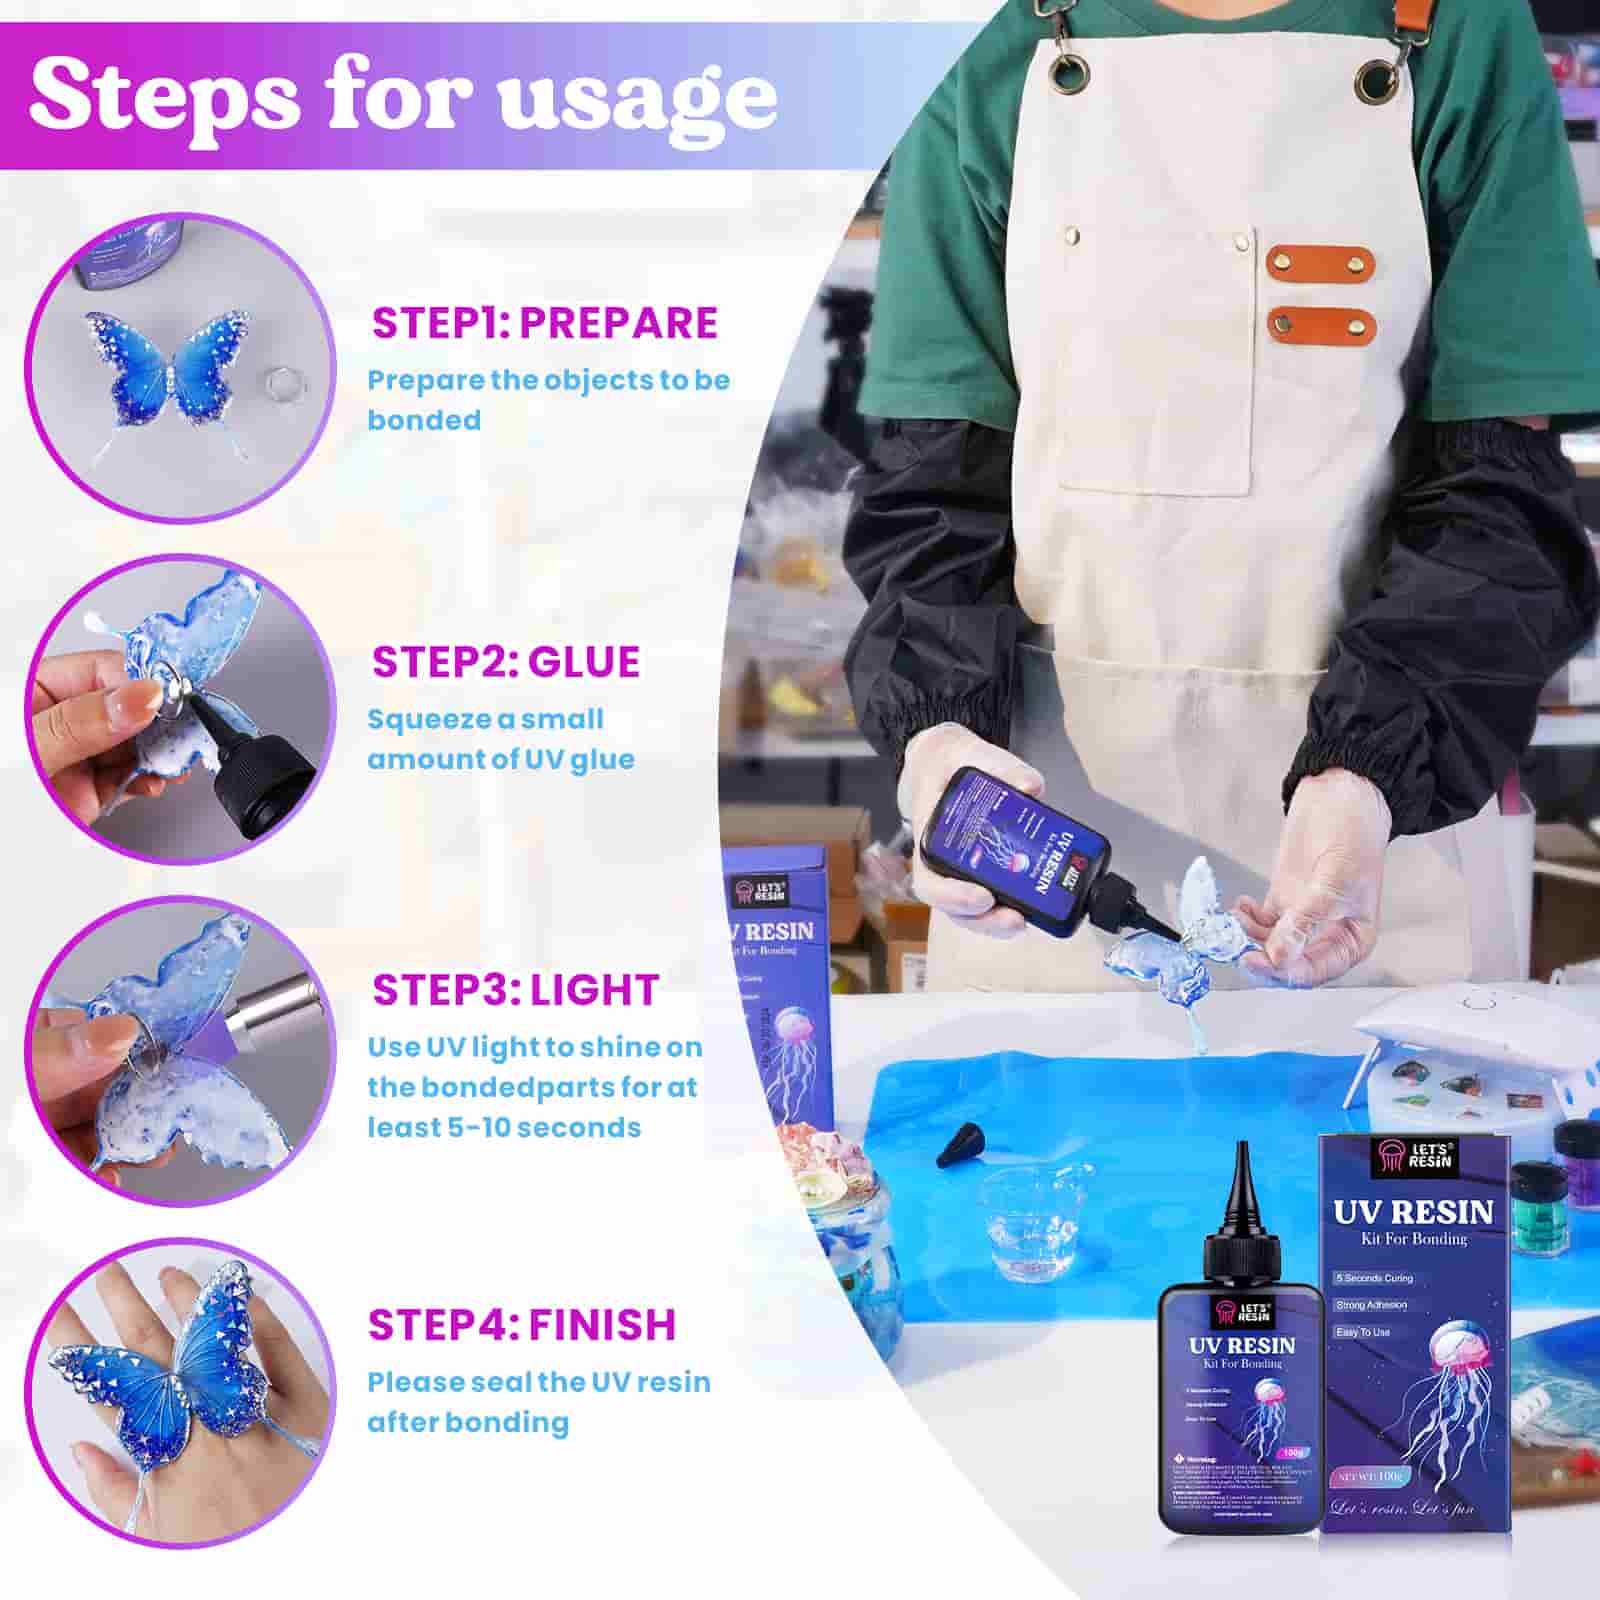 LET'S RESIN UV Resin Kit with Light, Bonding&Curing in Seconds, 25g UV Resin  Kit with UV Flashlight for Welding, Jewelry UV Glue Adhesive for Plastic  Repair, Glass Light, Craft Decor